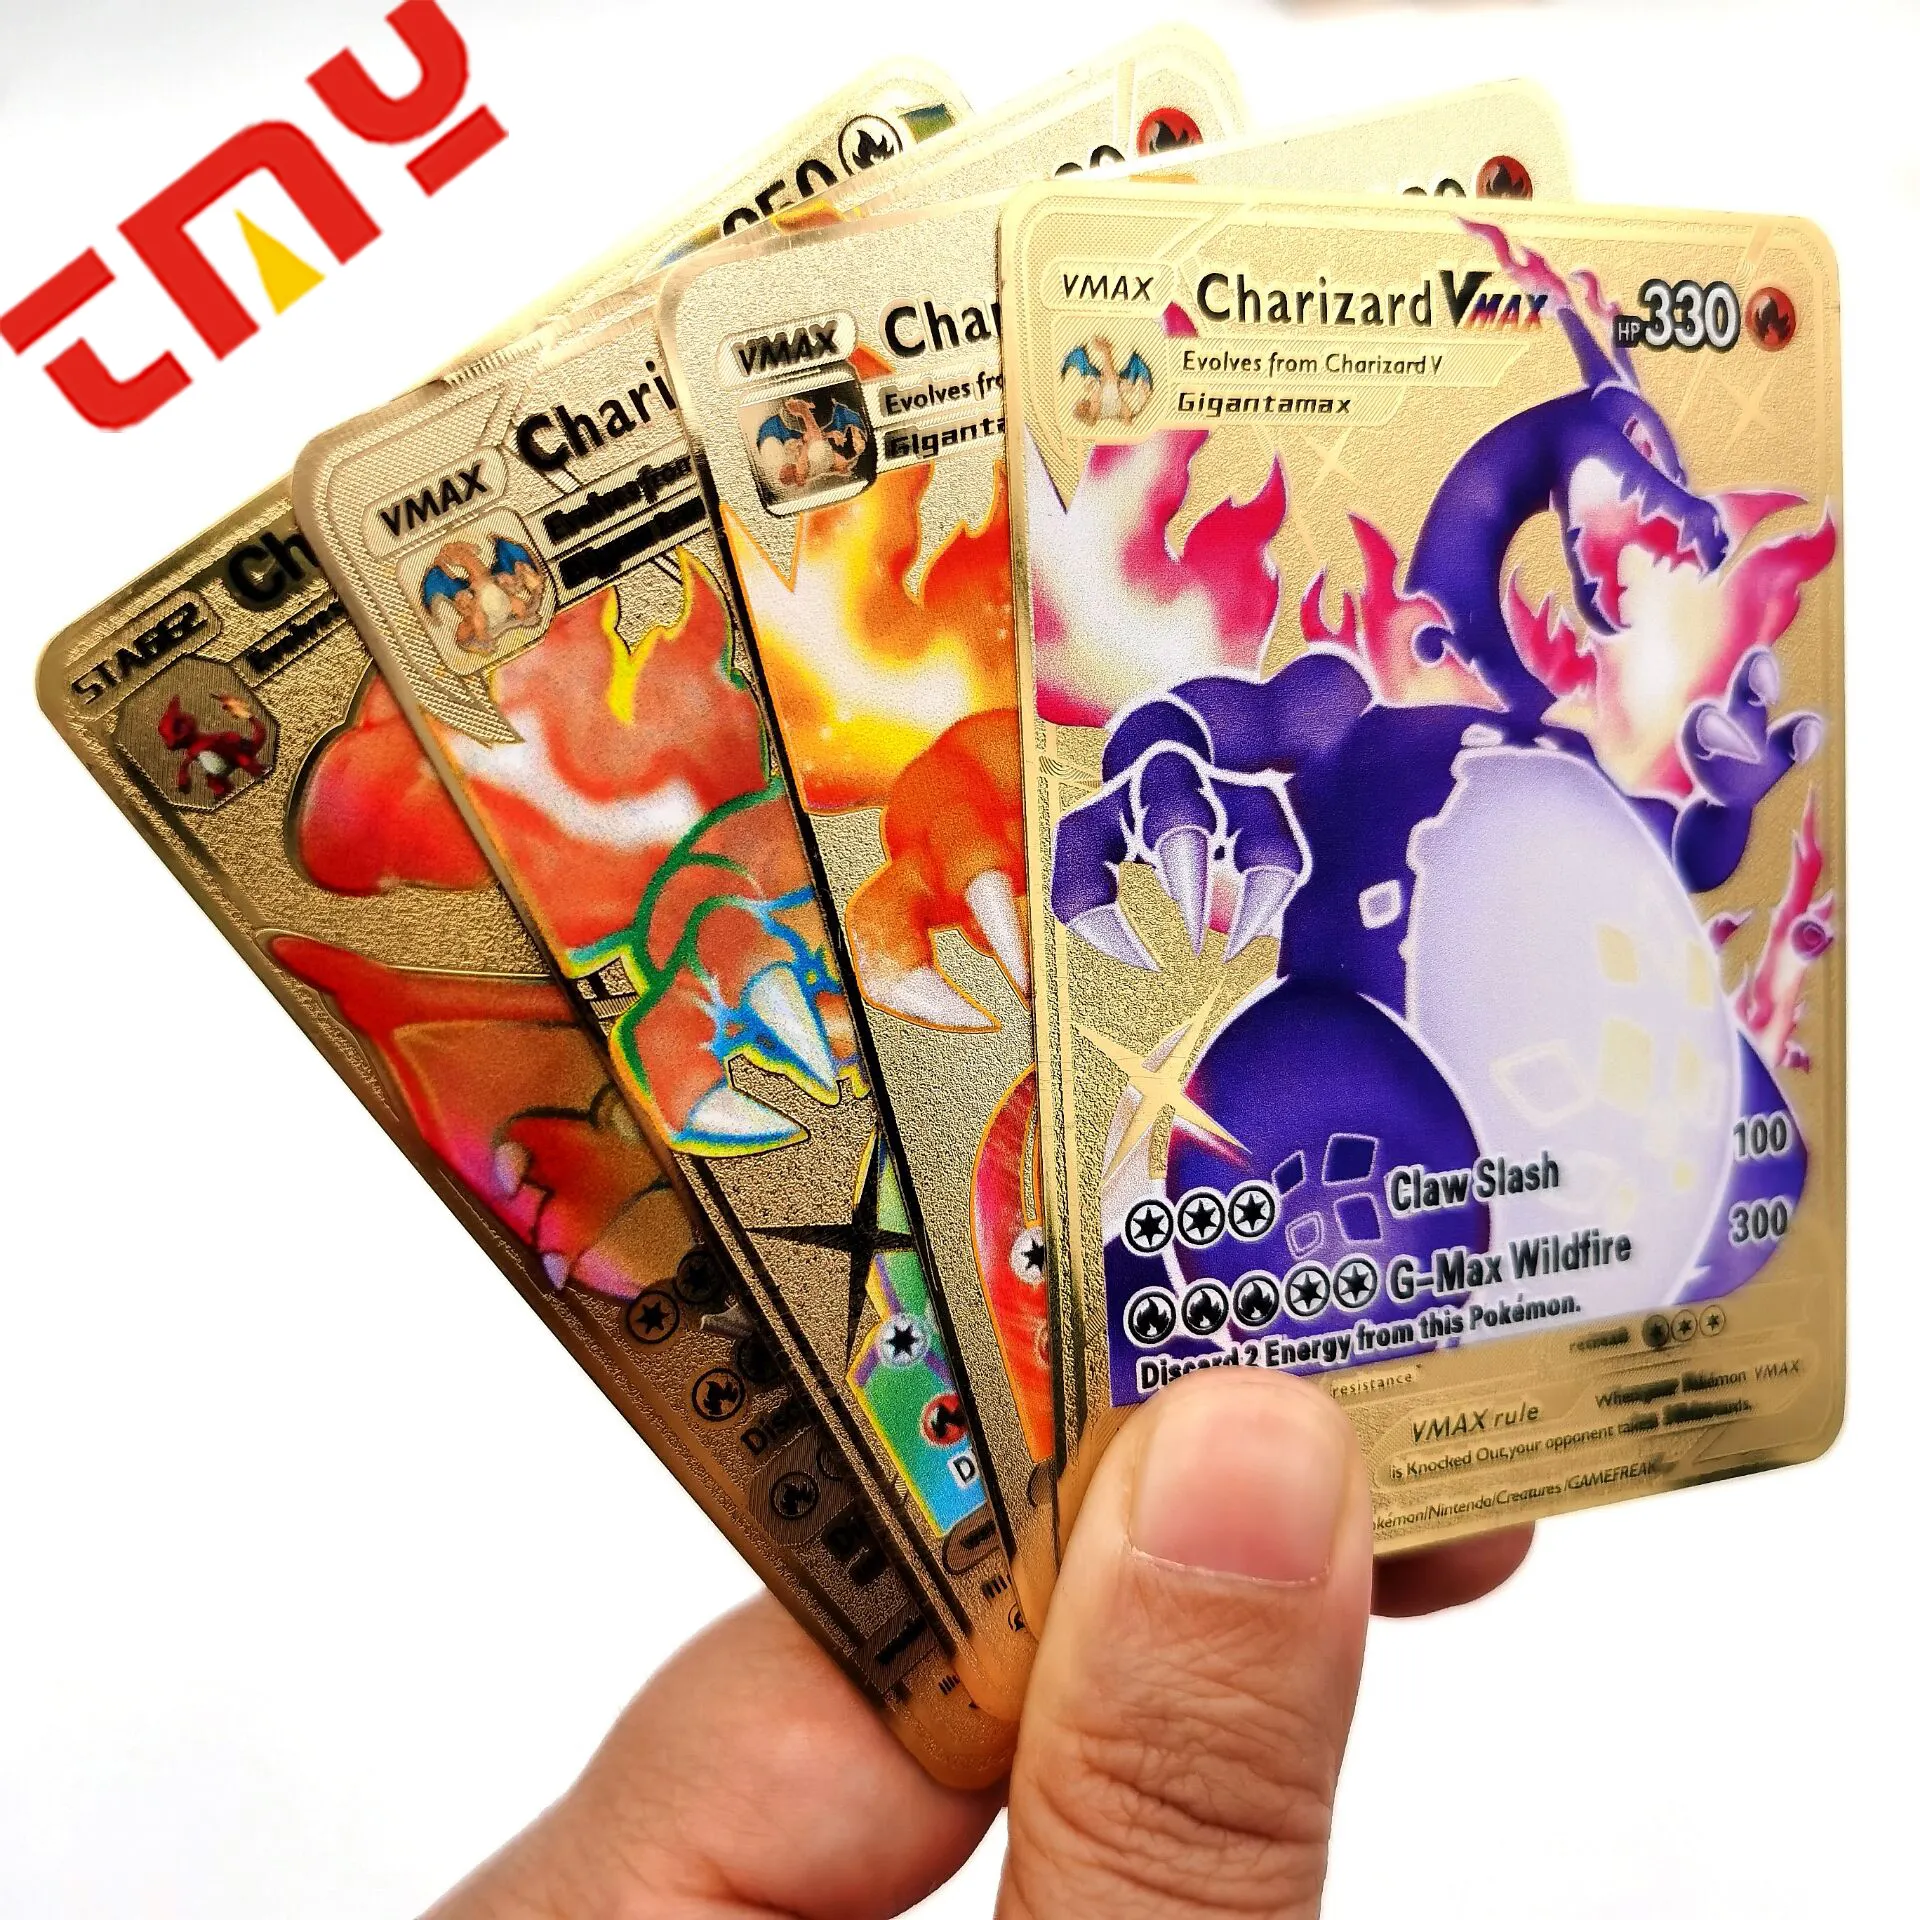 2022 حار بيع بطاقات للعب تشارجر بوكيمون بطاقات الصور الطباعة الألمانية اليابانية الإنجليزية معدن الذهب بوكيمون بطاقات